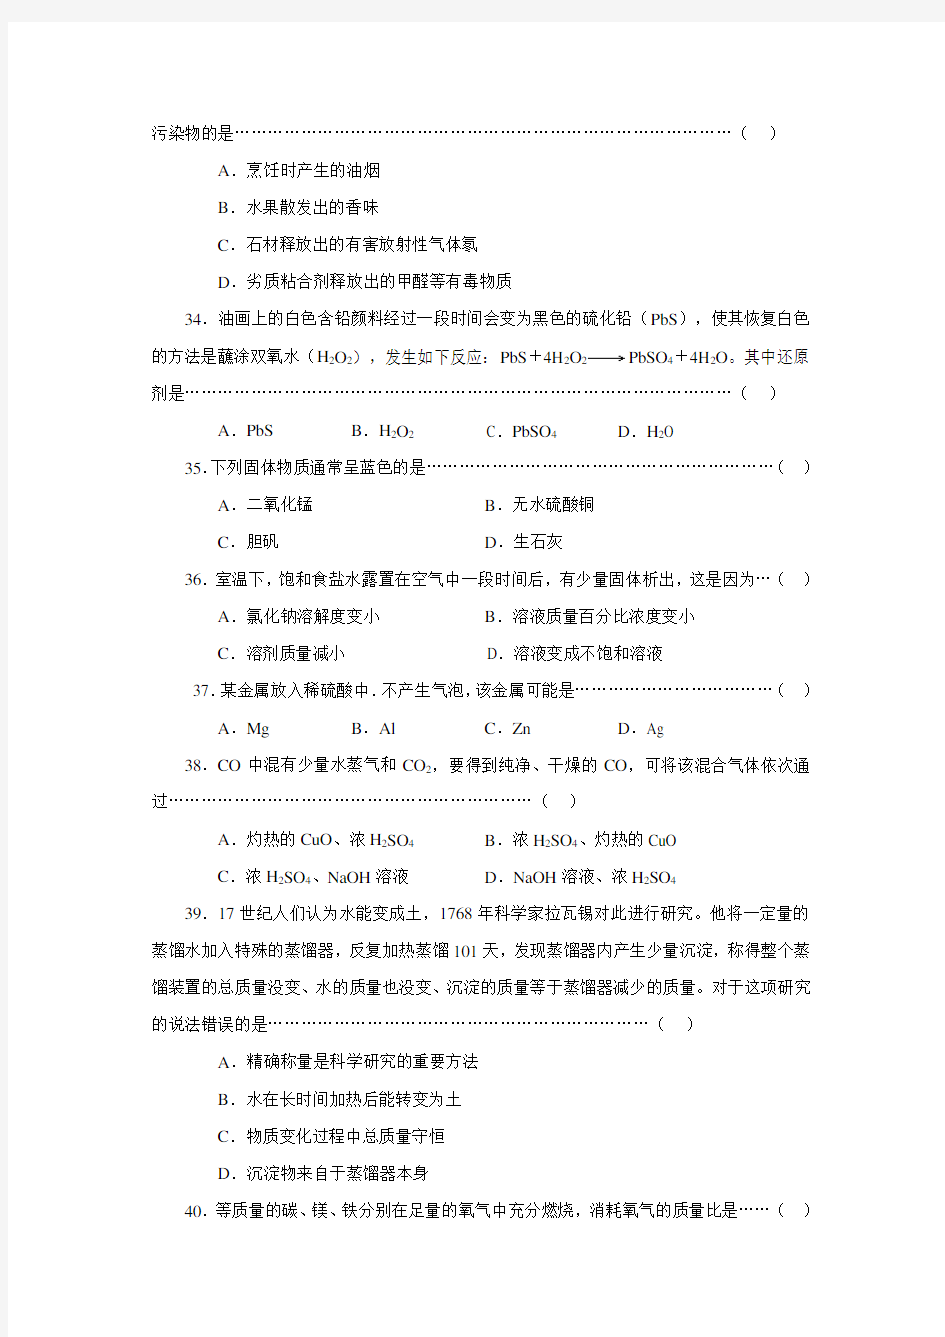 (完整版)2018年上海市化学中考试题(附答案)